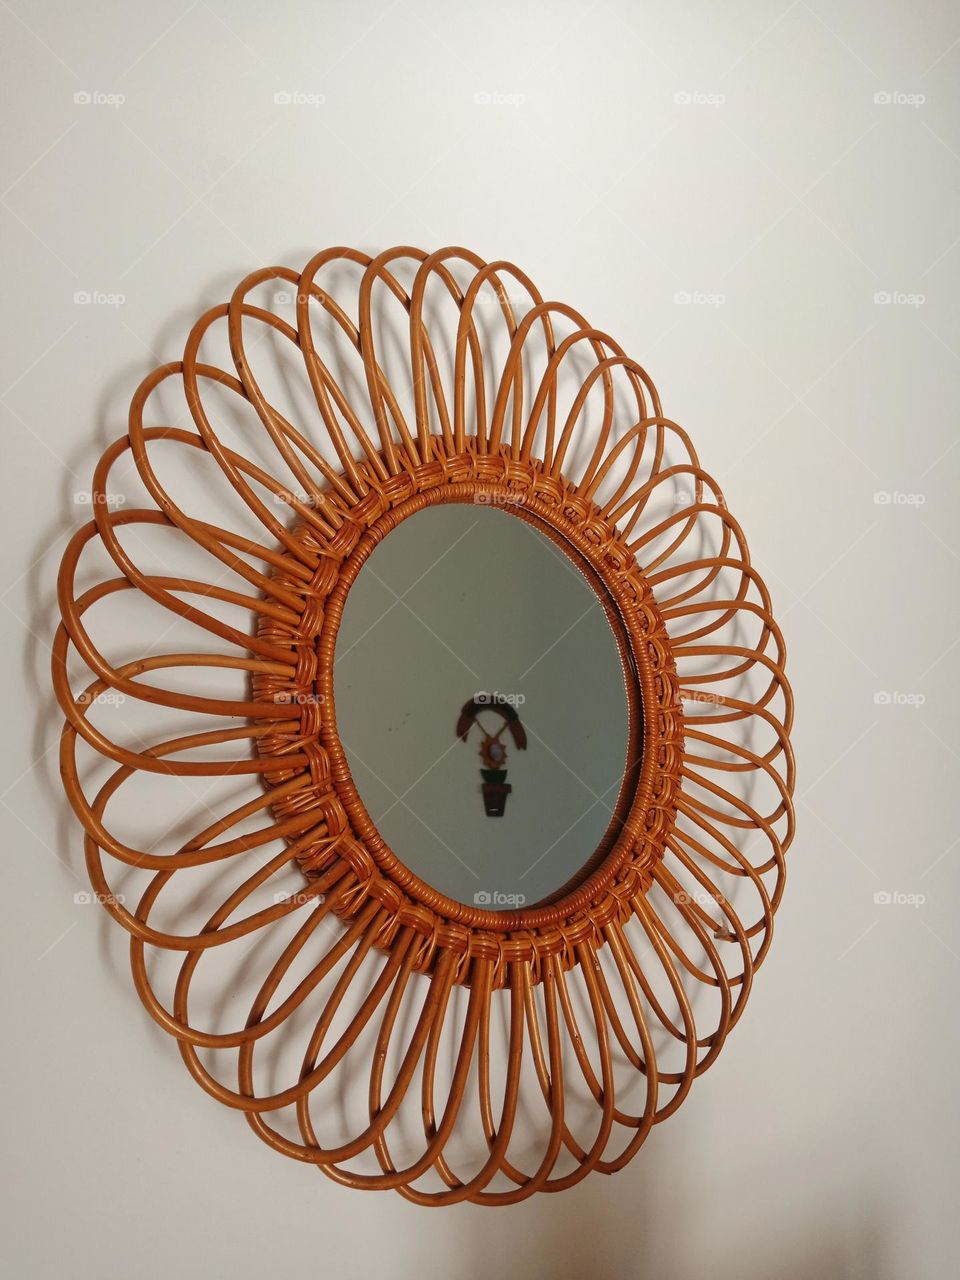 round straw mirror